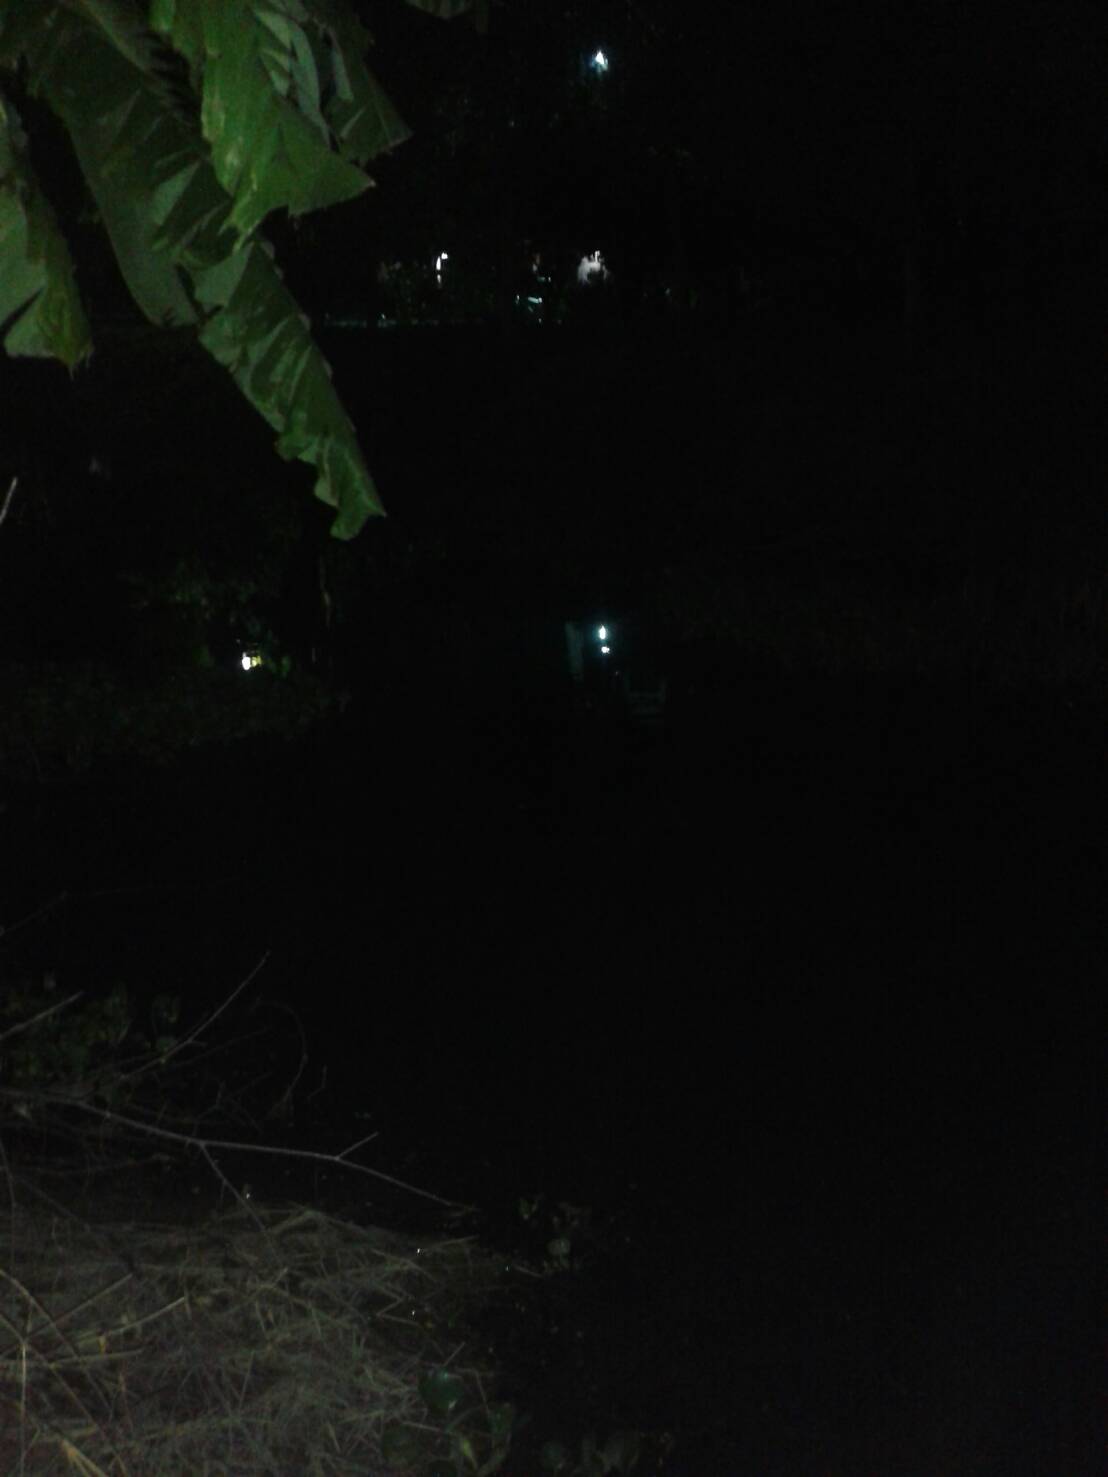 Night fishing